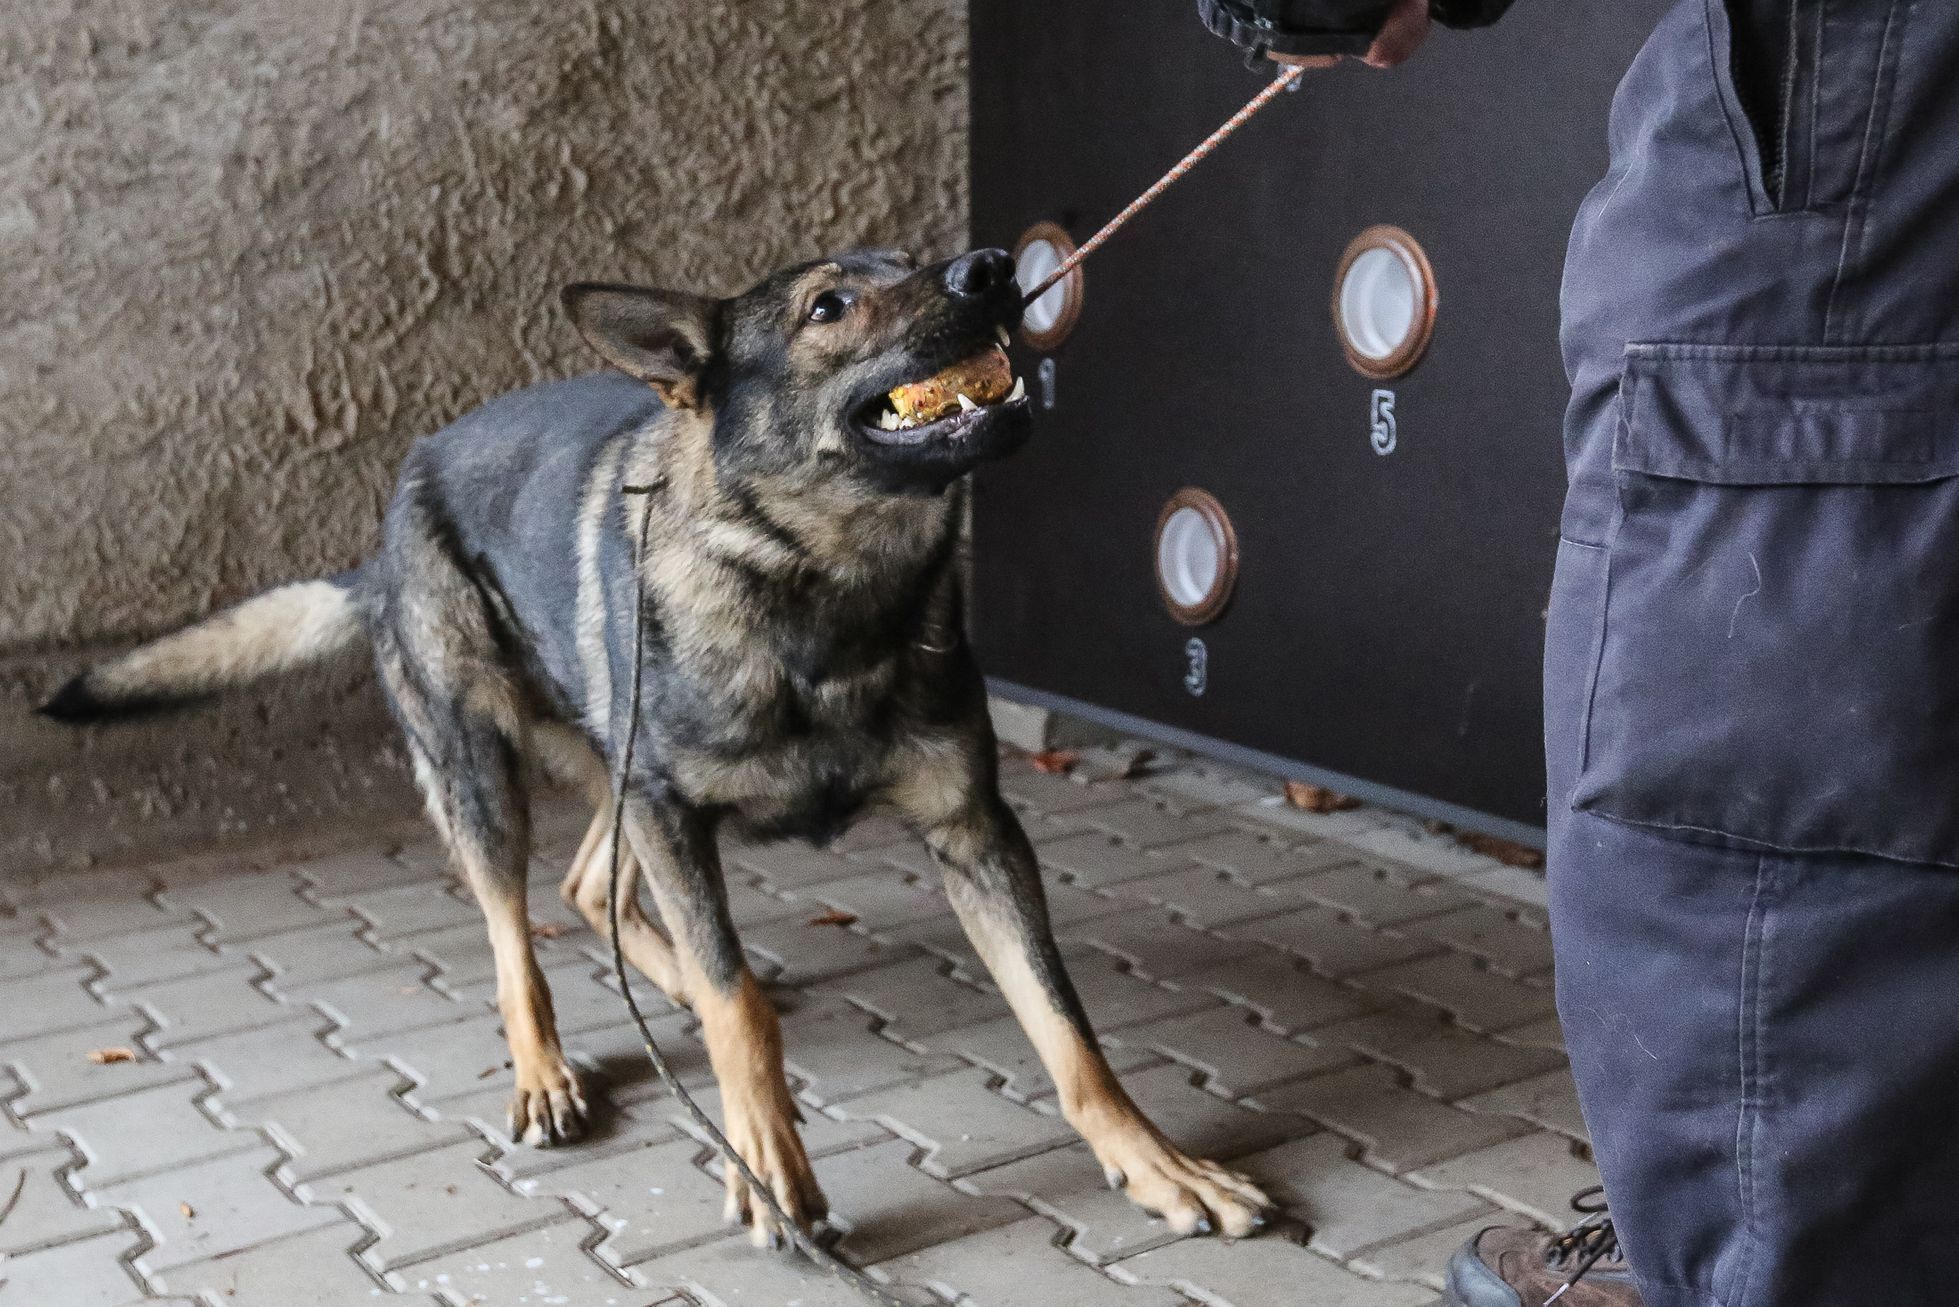 Výcvik policejních psů na hledání výbušnin, tzv. pyropsů